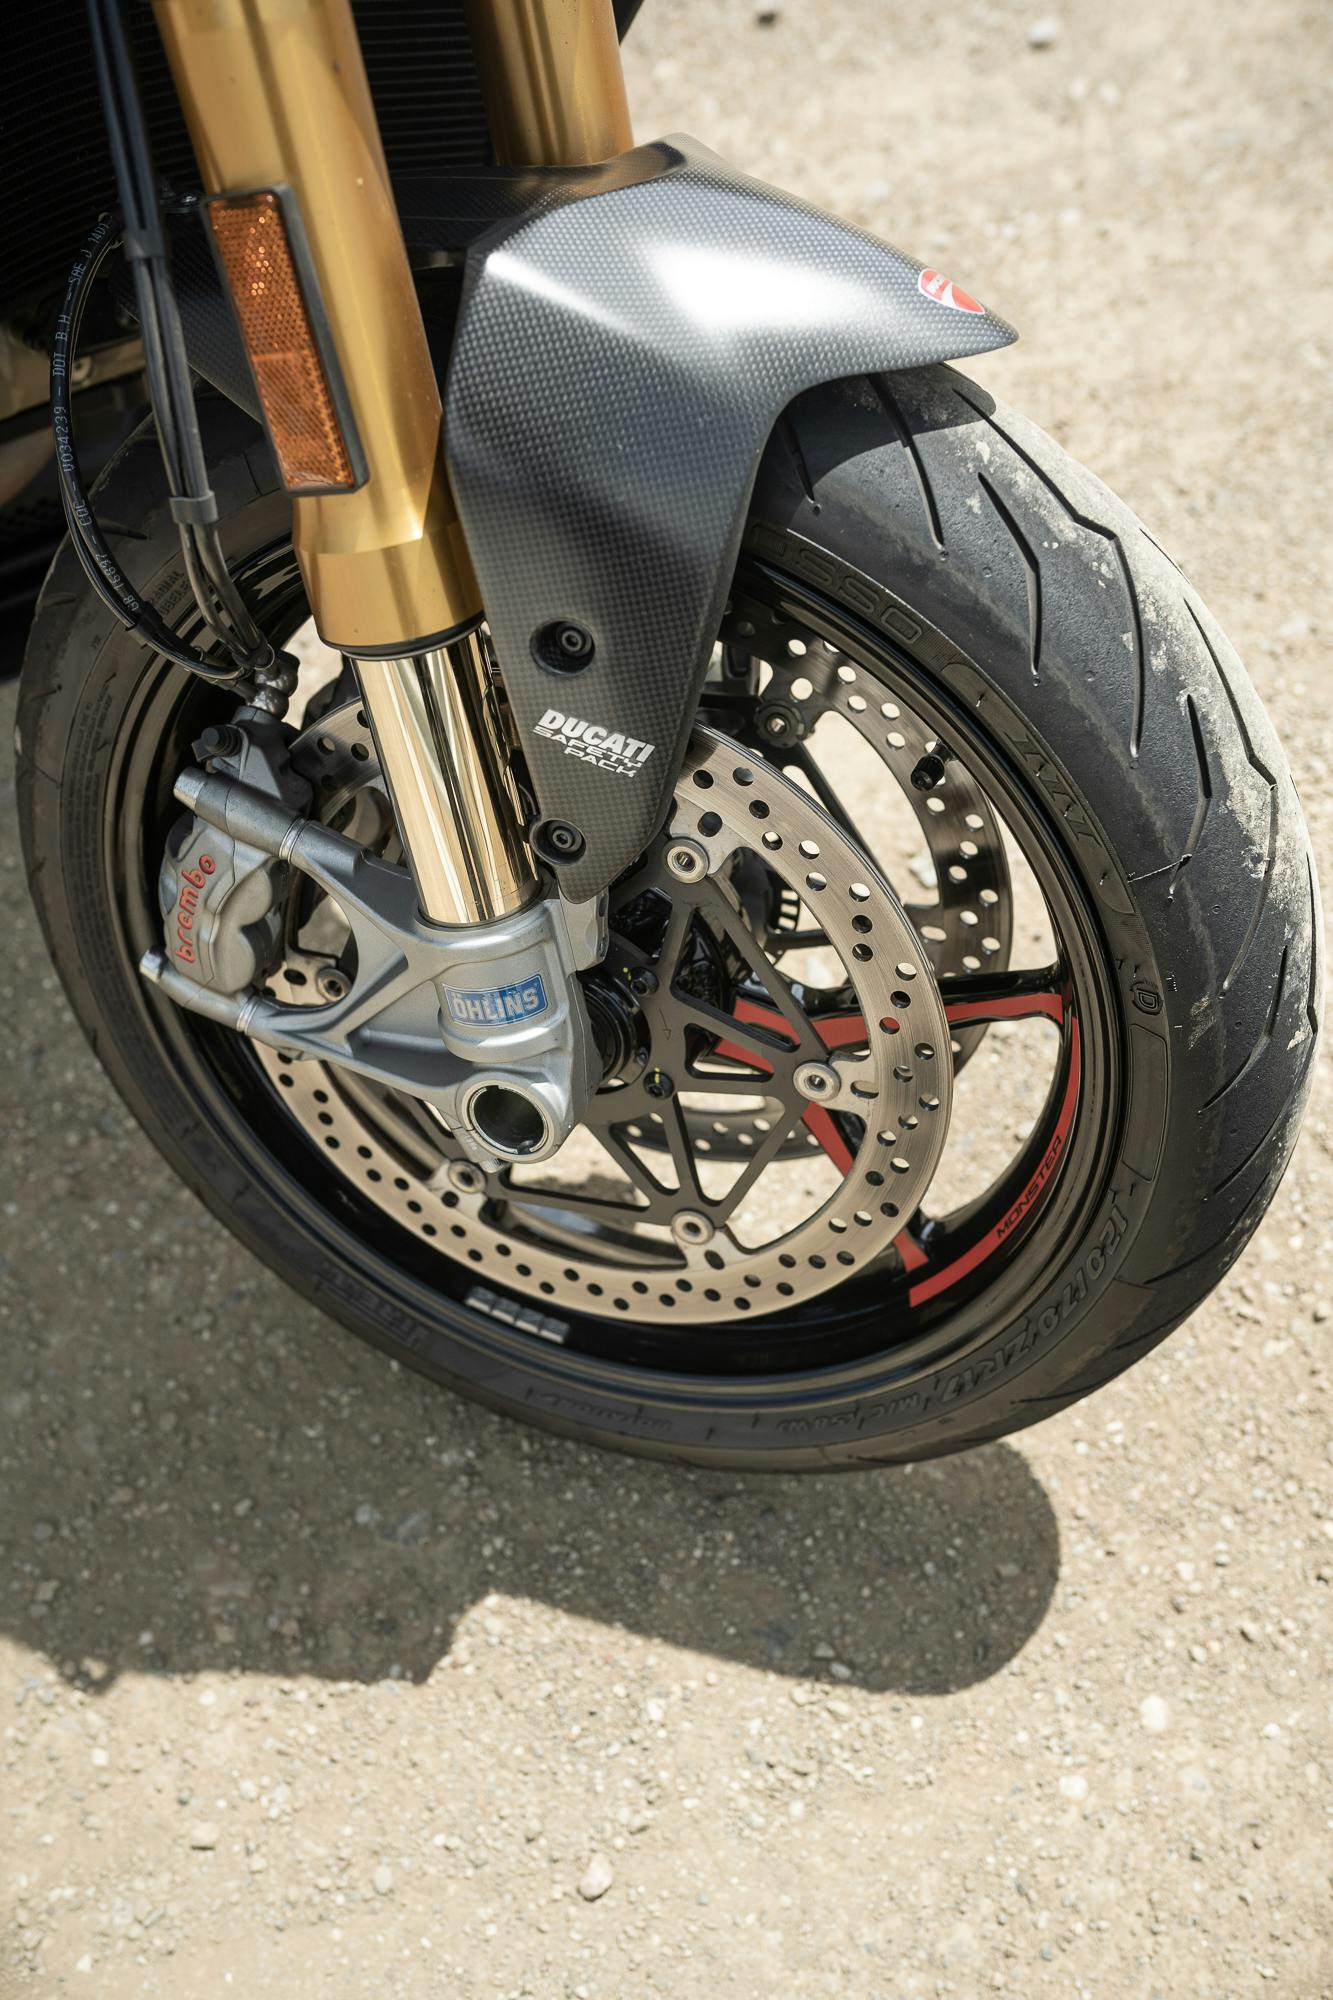 2021 Ducati Monster 1200 S front wheel detail vertical